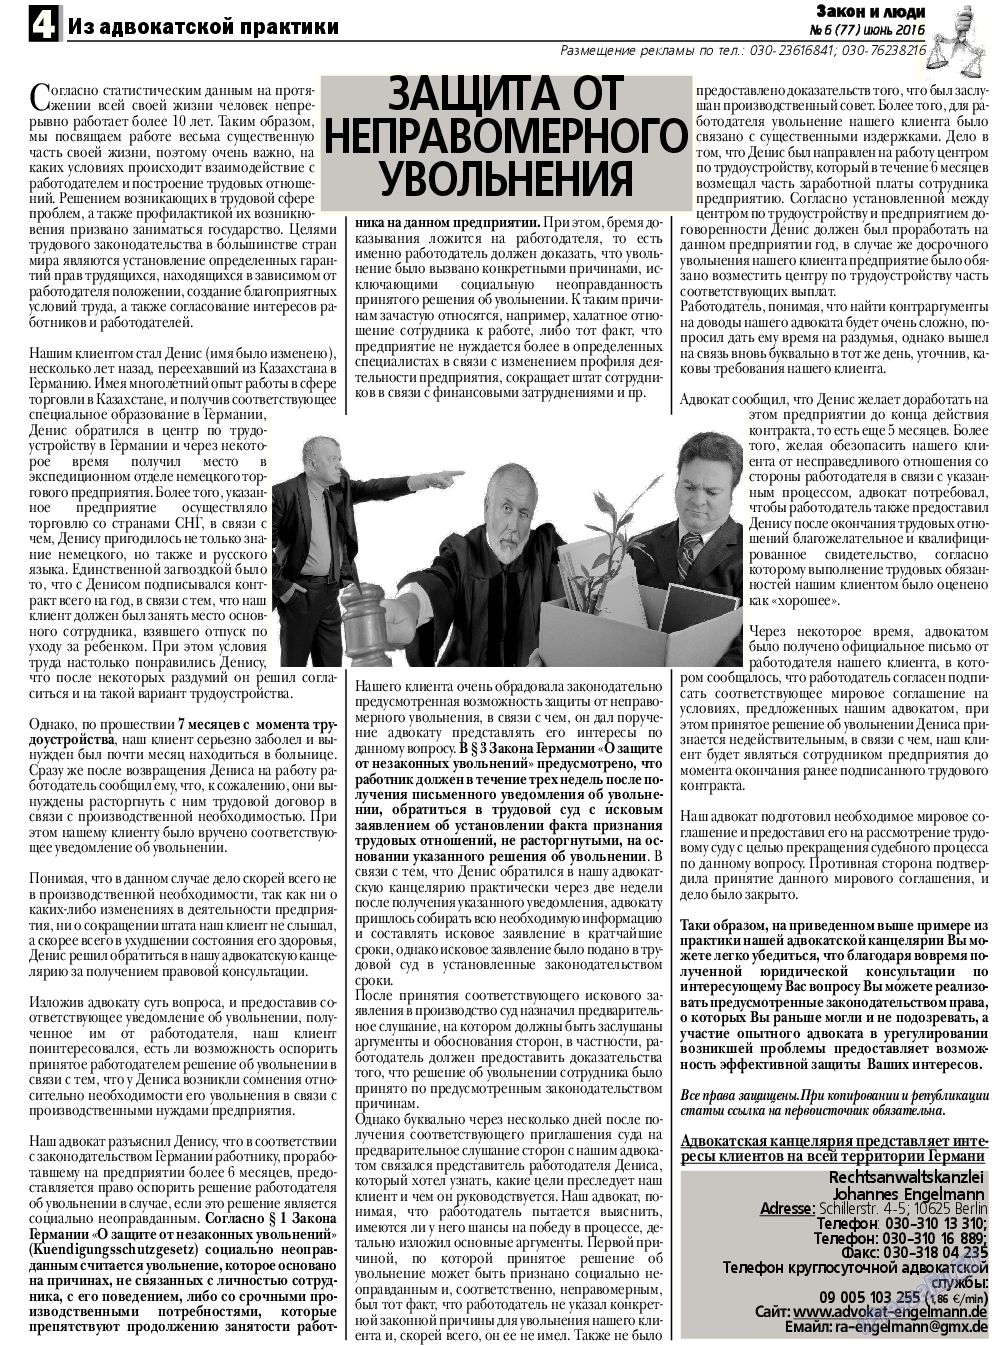 Закон и люди, газета. 2016 №6 стр.4